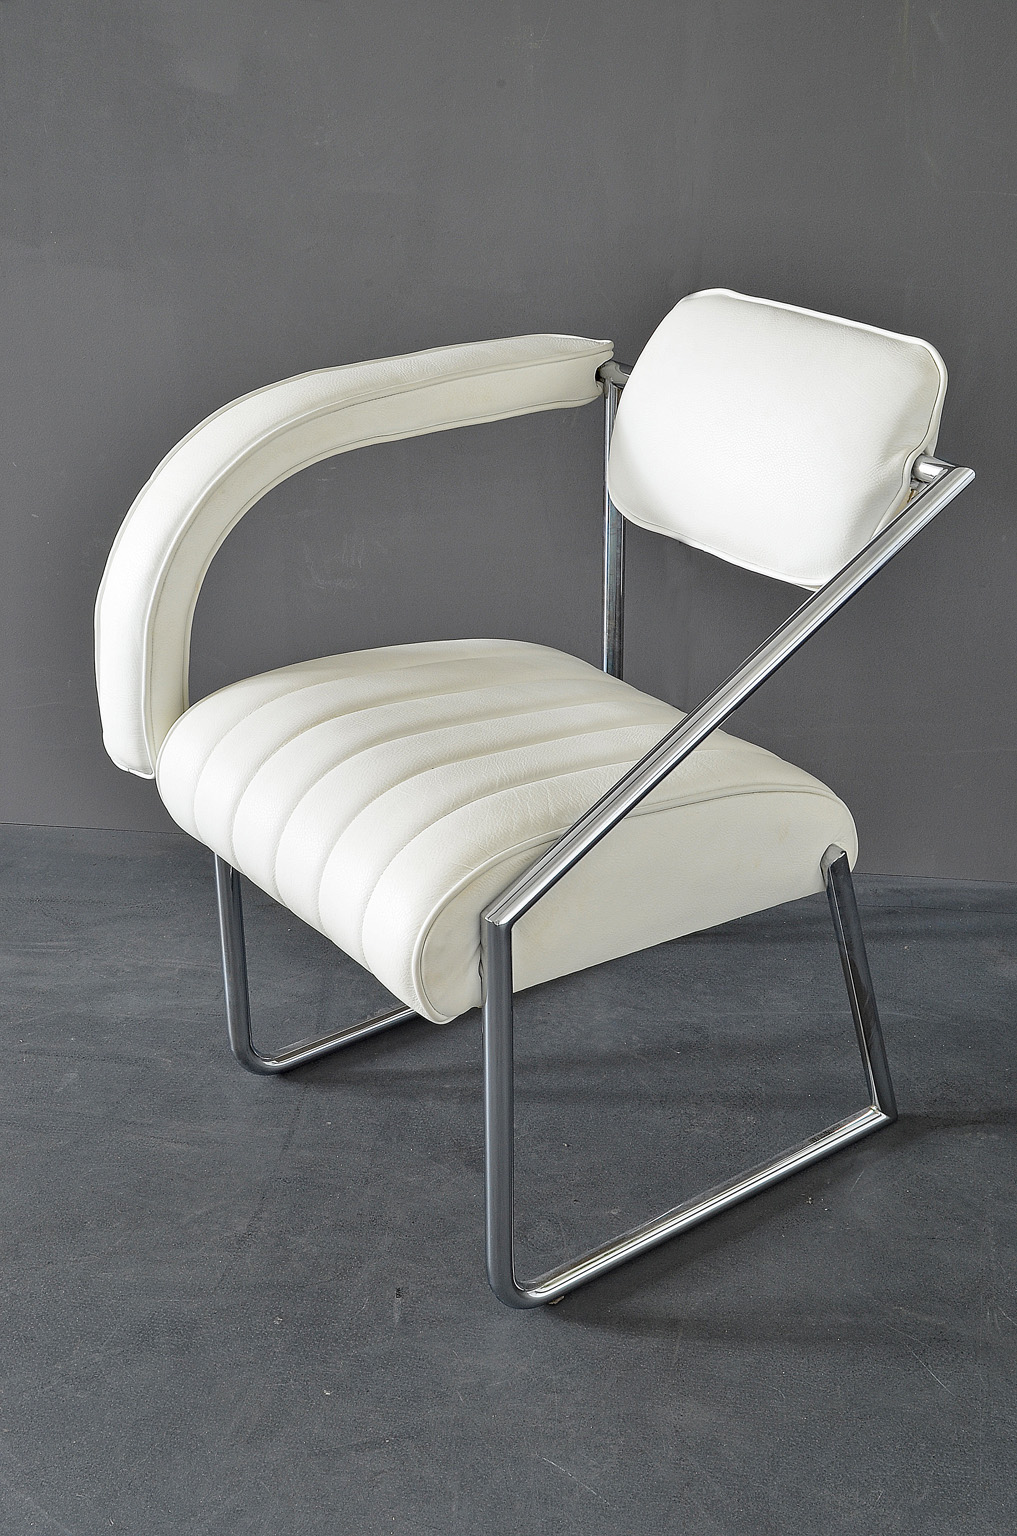 “SOLD” Easy Chair designed by Eileen Gray “Non Conformist”, 1926. Vereinigte Werkstätten Munich, 1970s